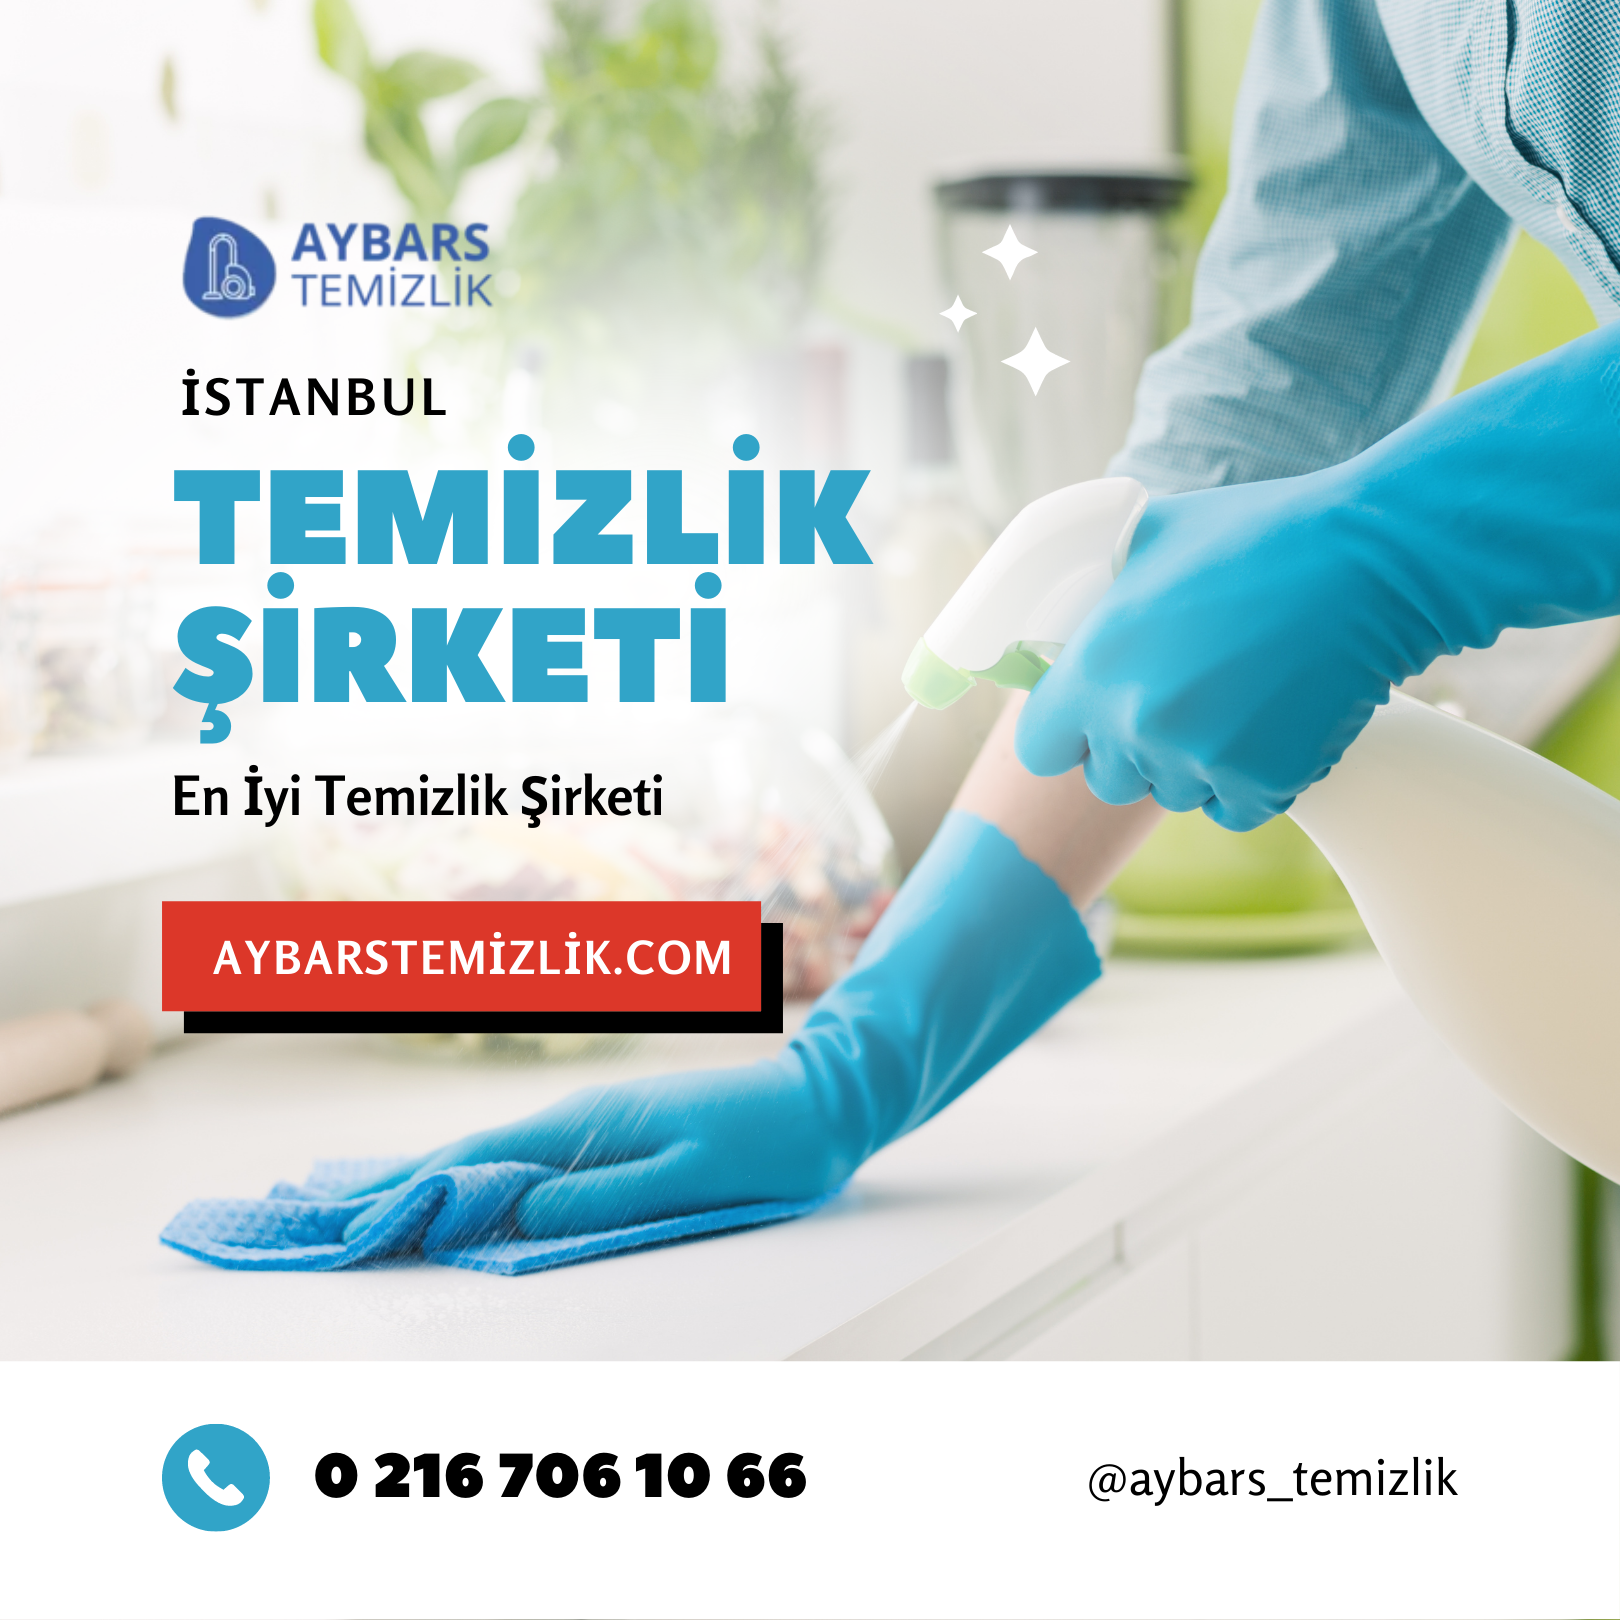 istanbul-da-temizlik-sirketleri1.jpg